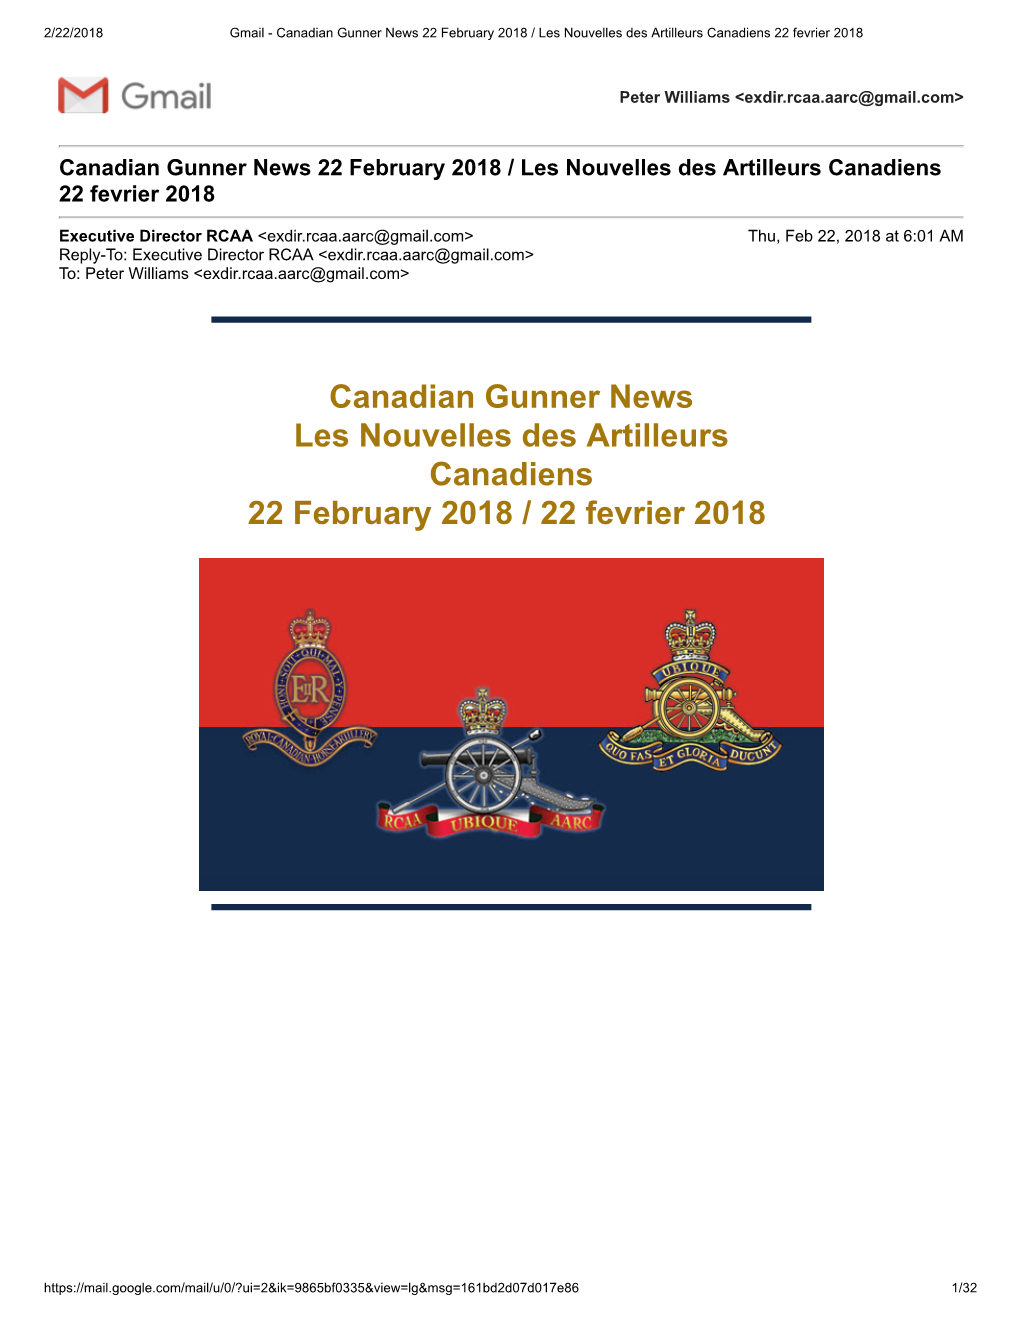 Canadian Gunner News Les Nouvelles Des Artilleurs Canadiens 22 February 2018 / 22 Fevrier 2018